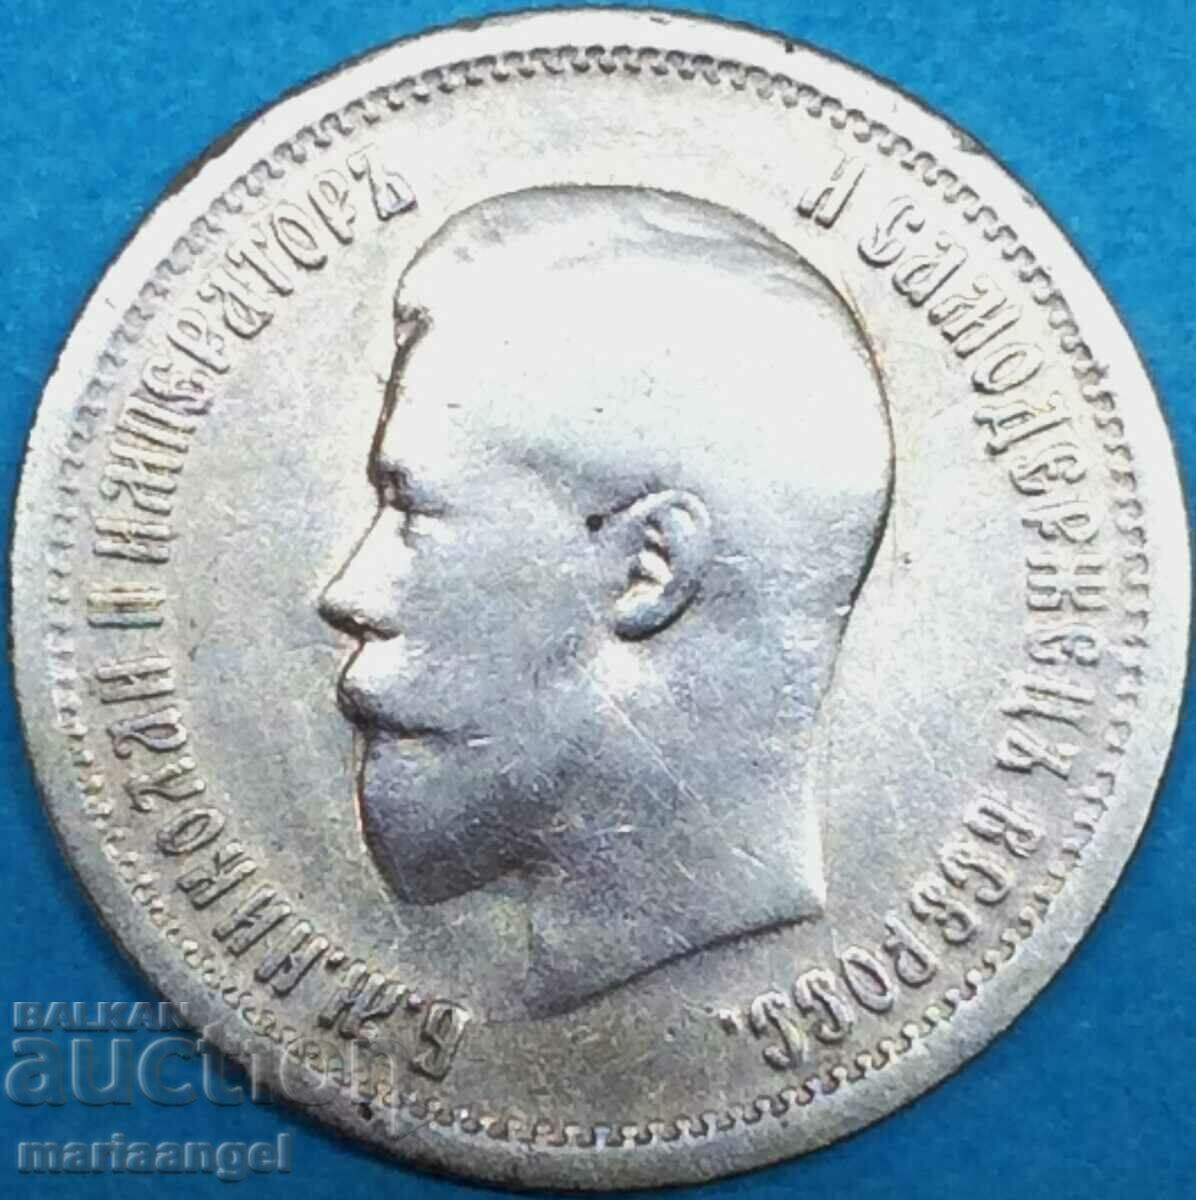 Ρωσία 25 καπίκια 1895 Nicholas II ασήμι - σπάνιο και ακριβό